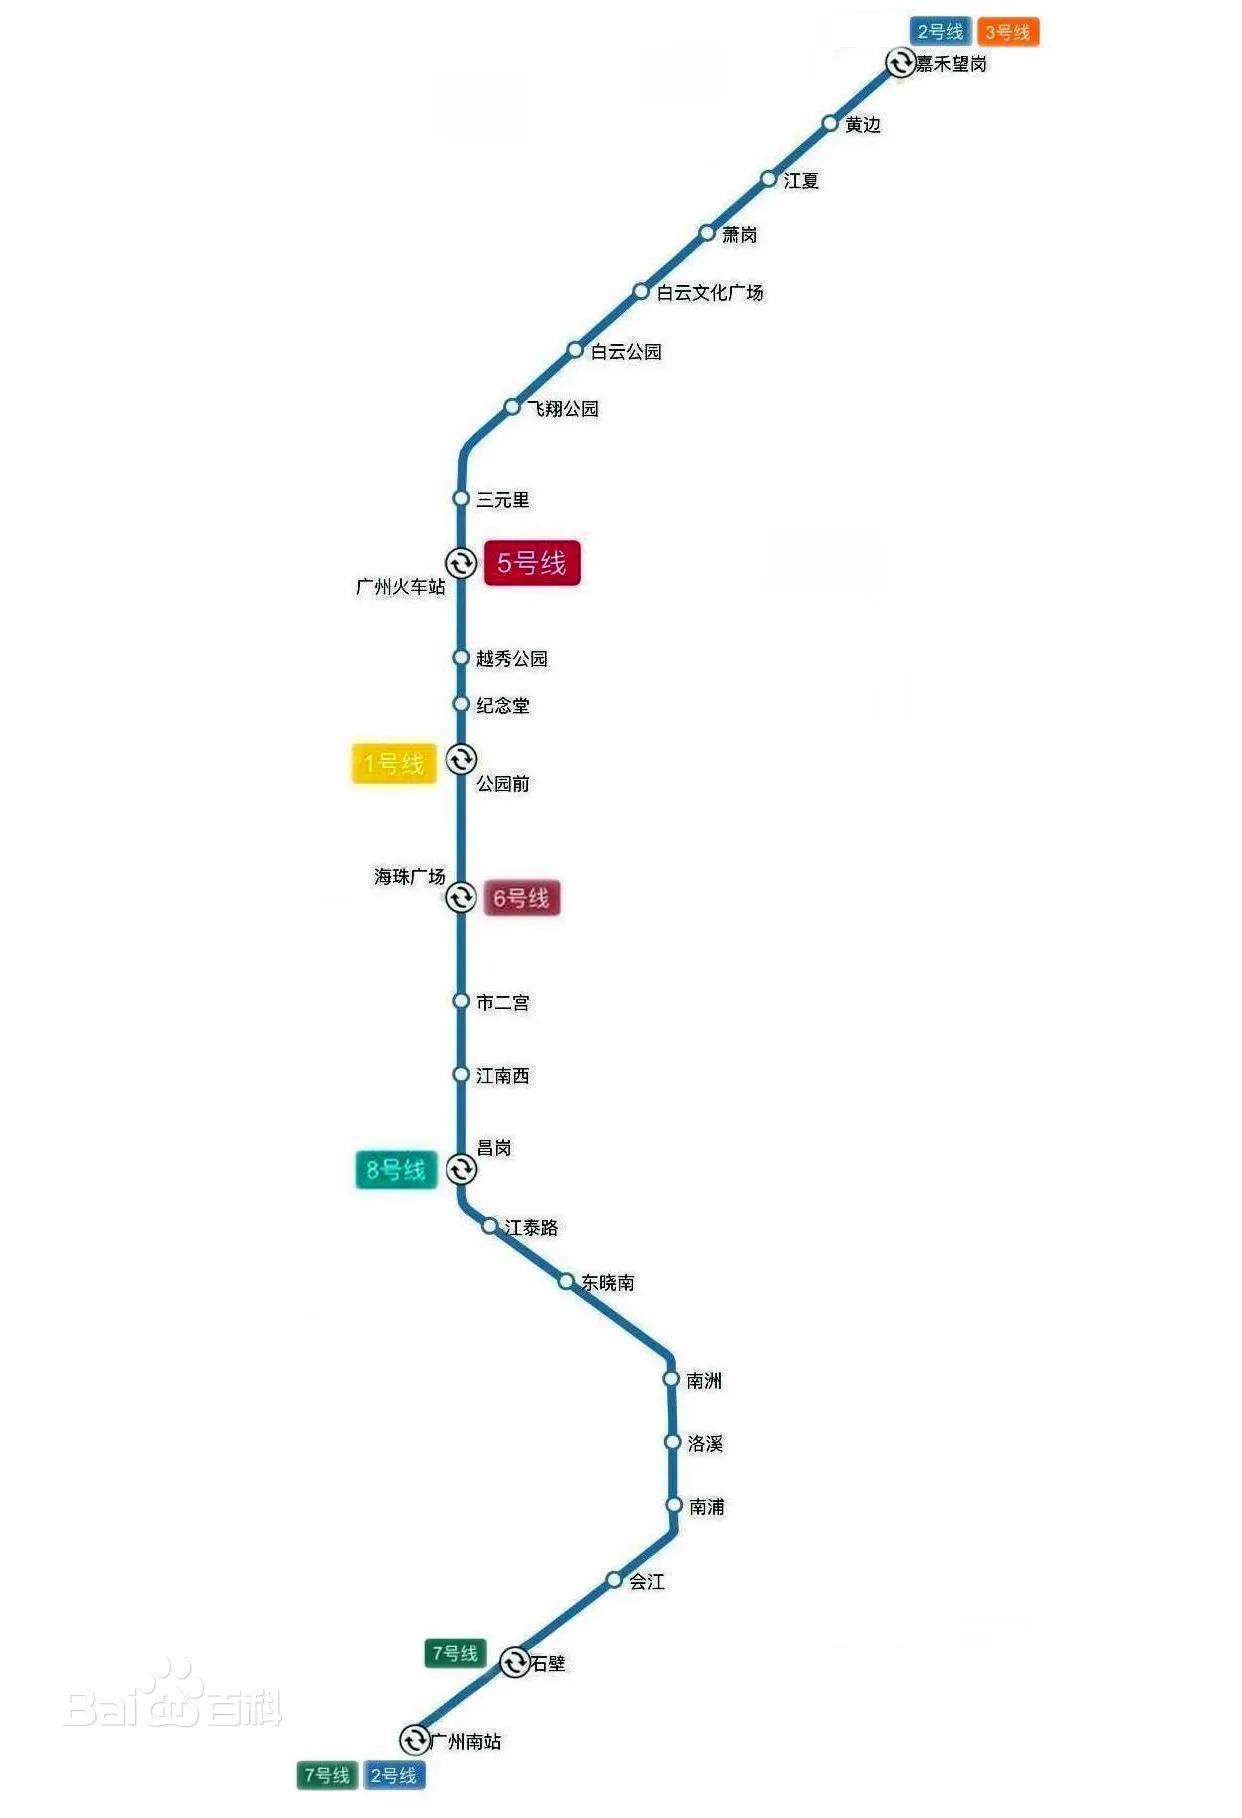 广州二号线（站点线路图+运营时间+首末车时间表）